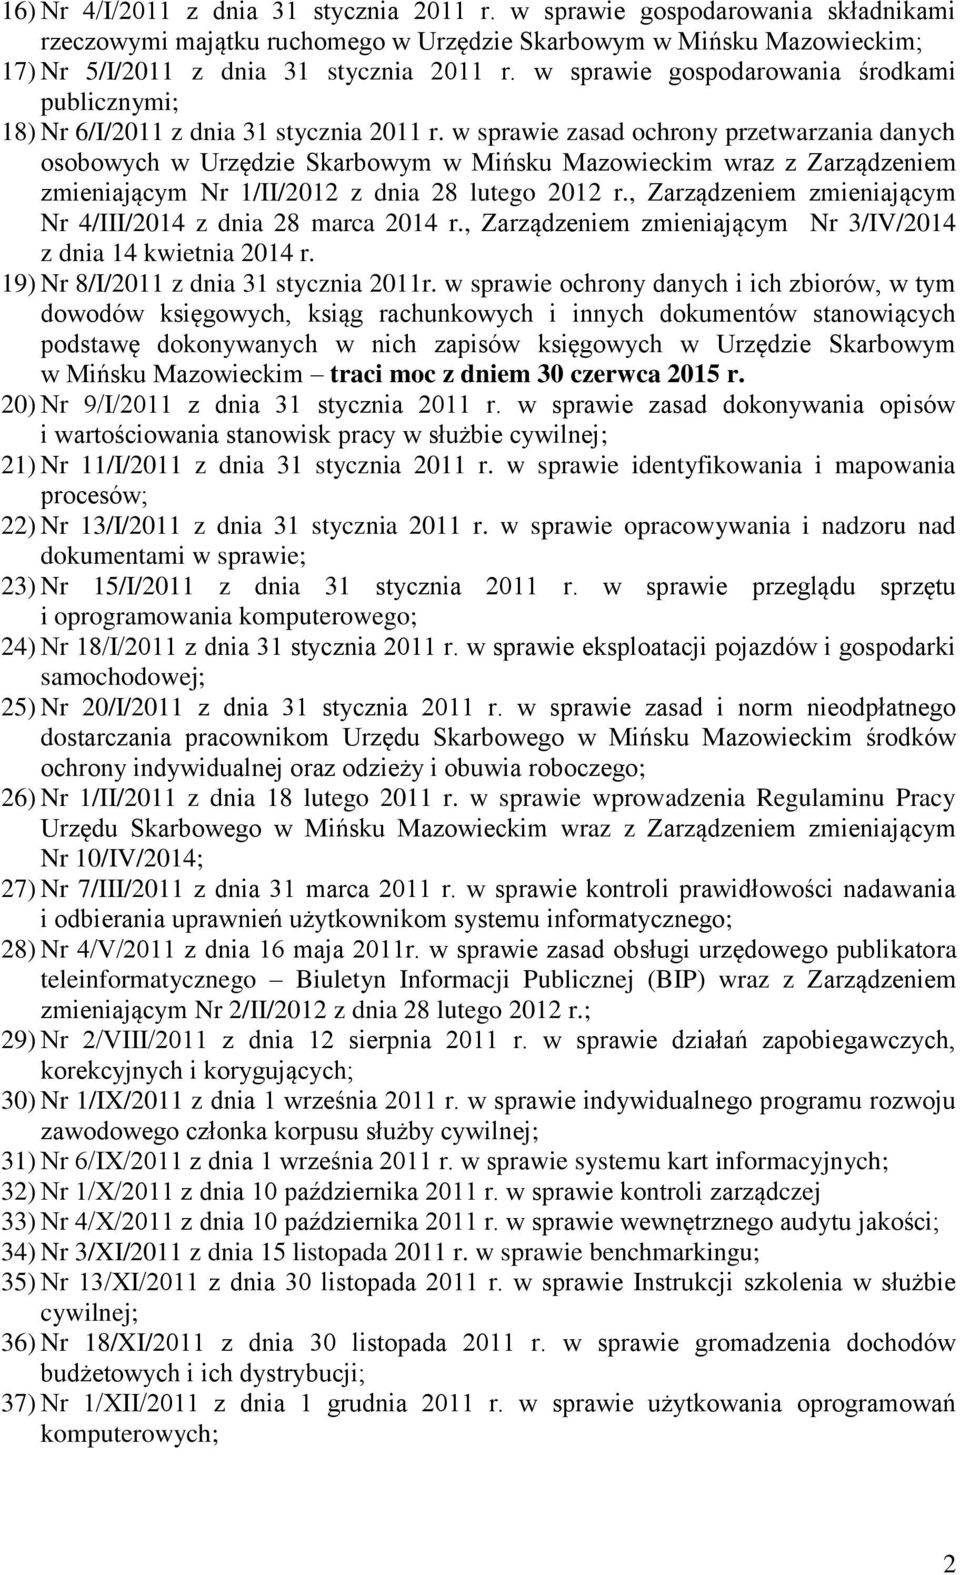 w sprawie zasad ochrony przetwarzania danych osobowych w Urzędzie Skarbowym w Mińsku Mazowieckim wraz z Zarządzeniem zmieniającym Nr 1/II/2012 z dnia 28 lutego 2012 r.